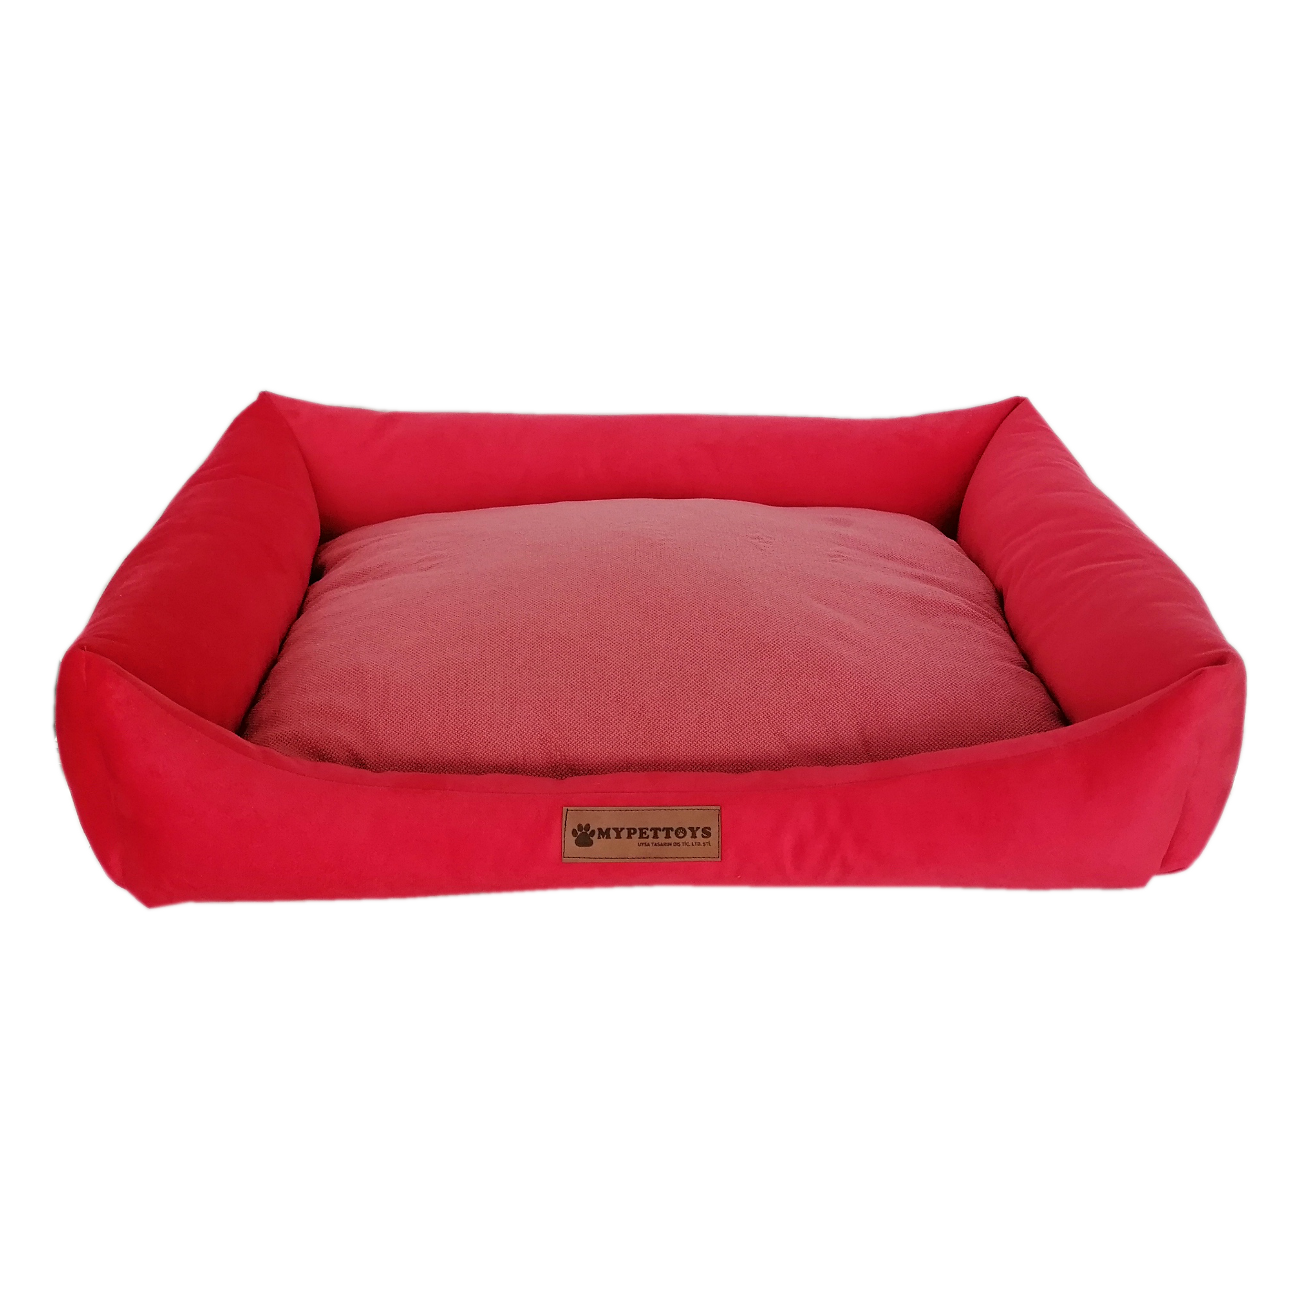 Tay Tüyü Yumuşak Köpek Yatağı Small Kırmızı 40*50 cm